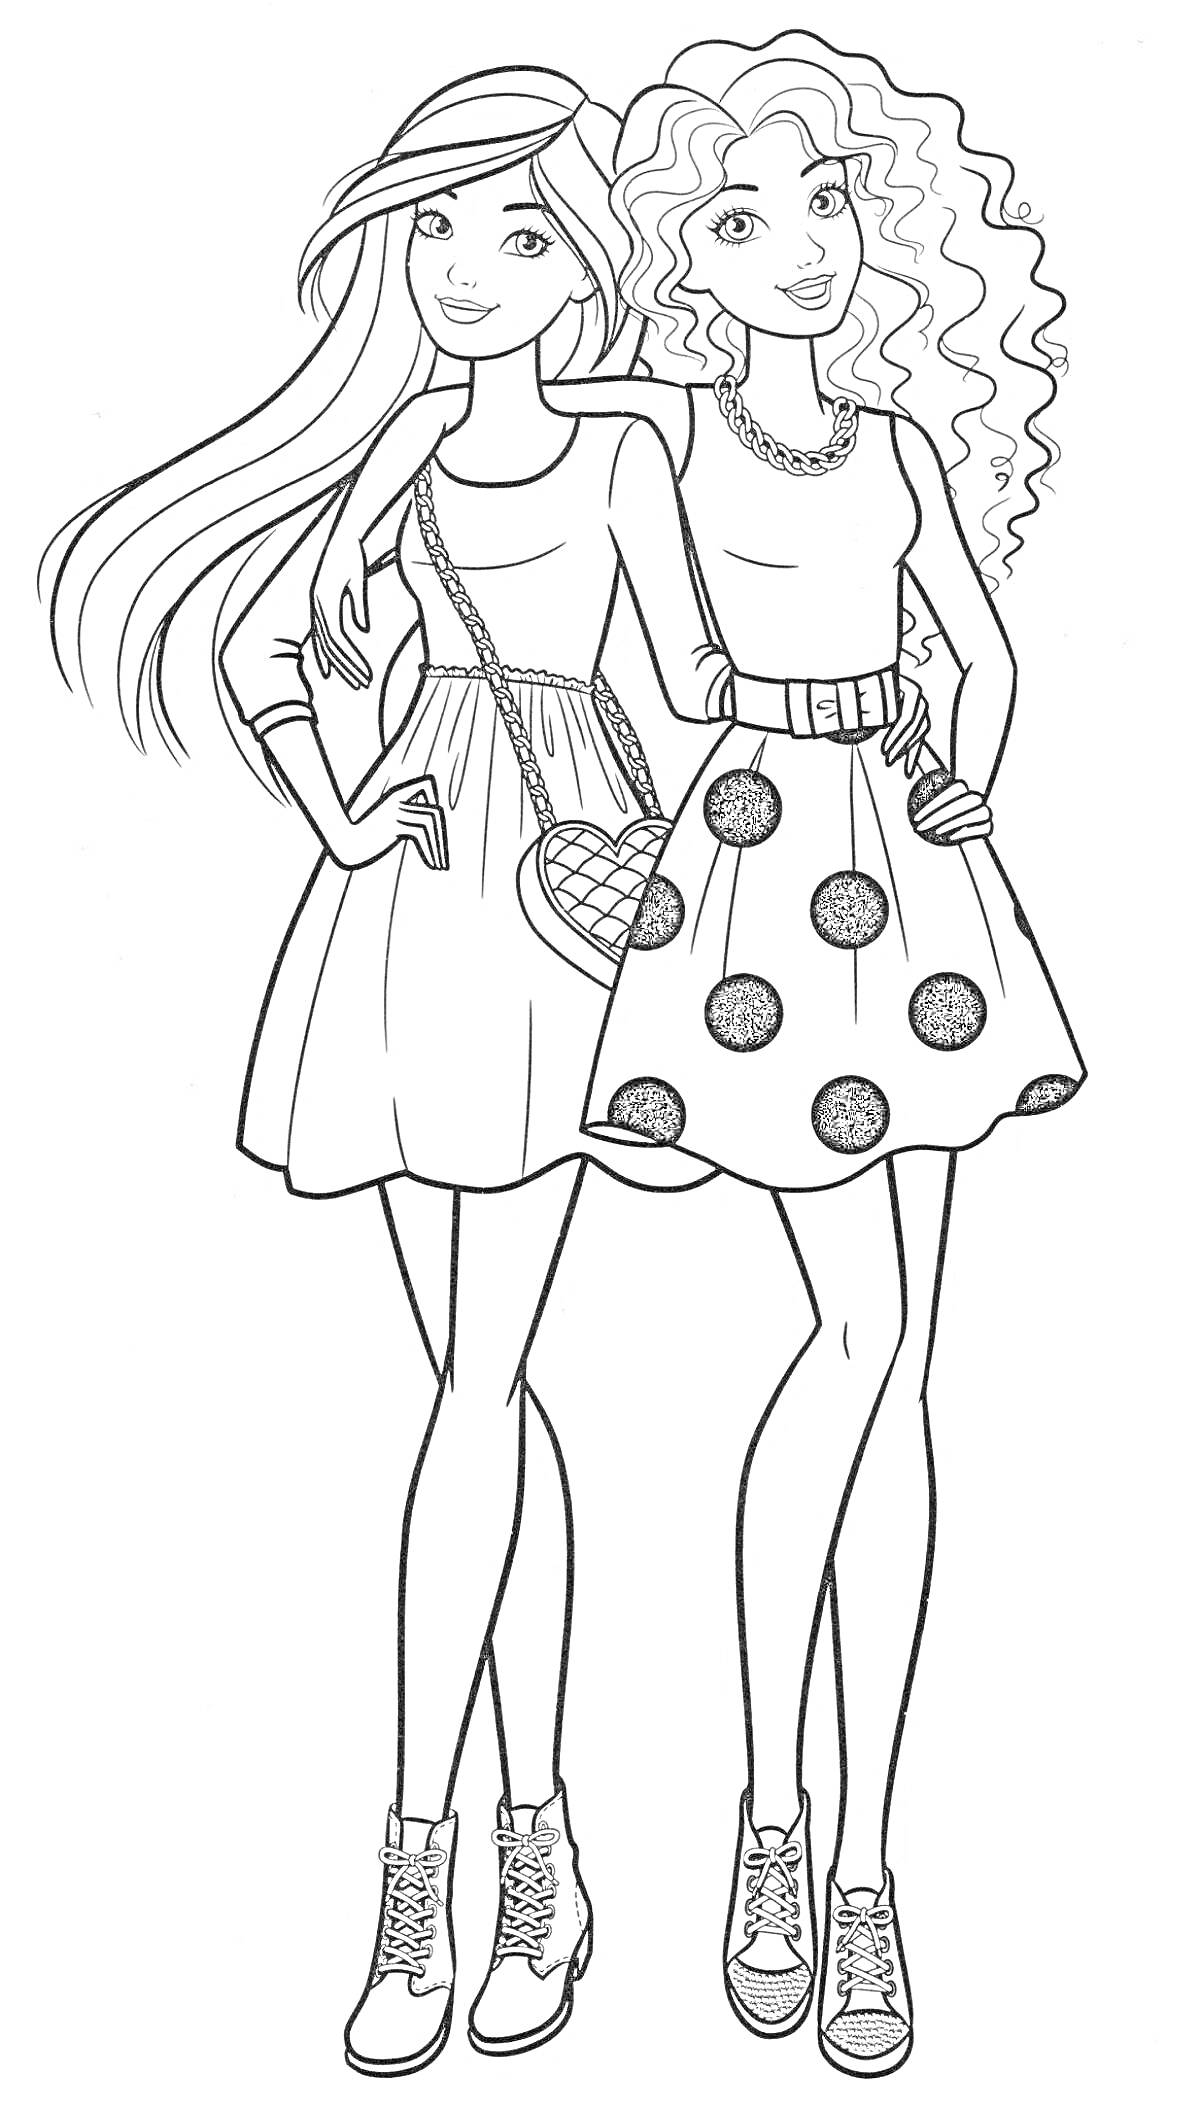 Раскраска Две подружки в платьях с сумочкой и кудряшками.